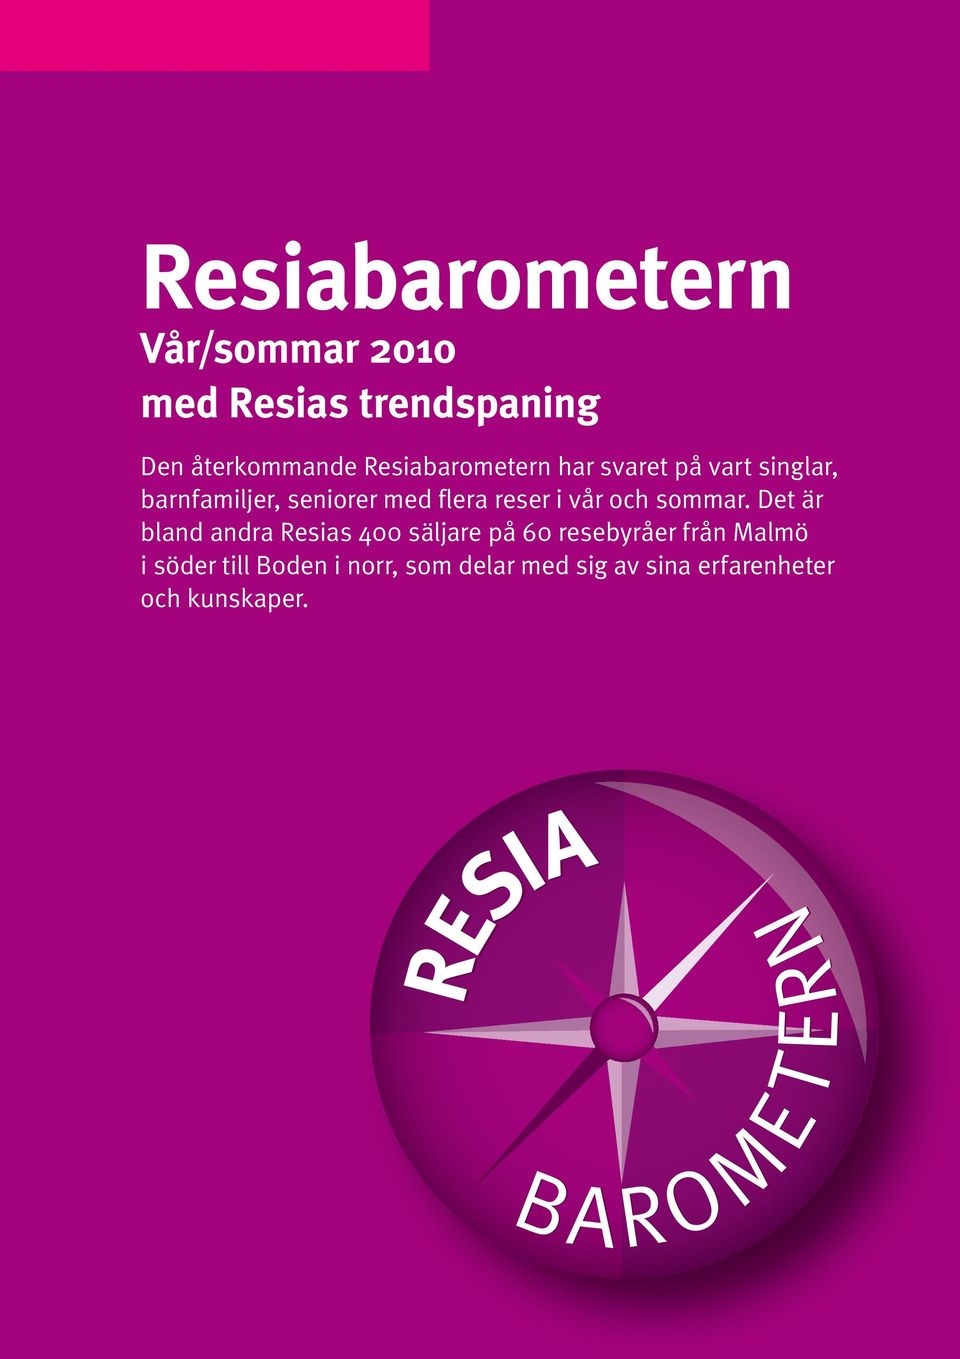 Det är bland andra Resias 400 säljare på 60 resebyråer från Malmö i söder till Boden i